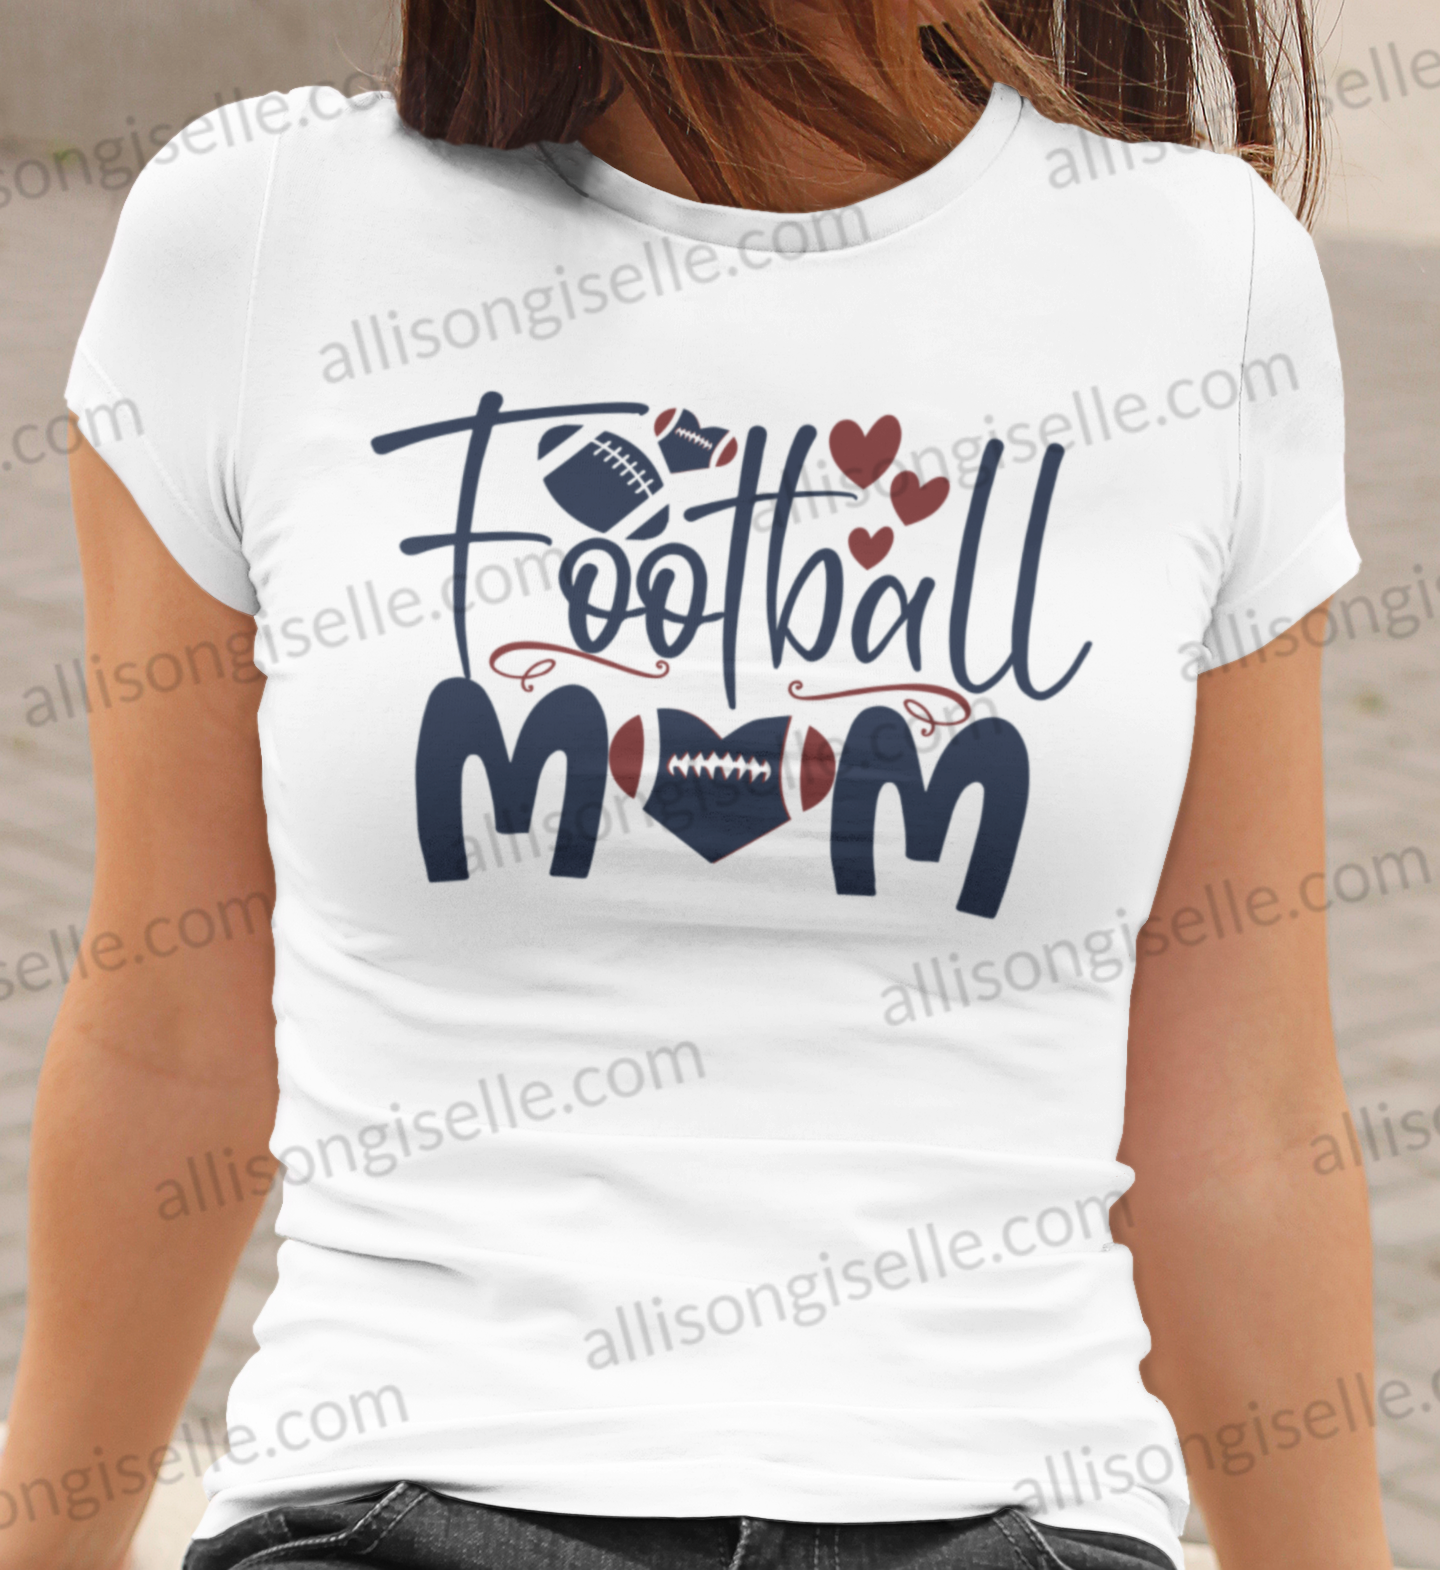 Football Mom Shirt, Football Shirt, Football Shirt Women, Crew Neck Women Shirt, Football t shirt, Football t shirt Women